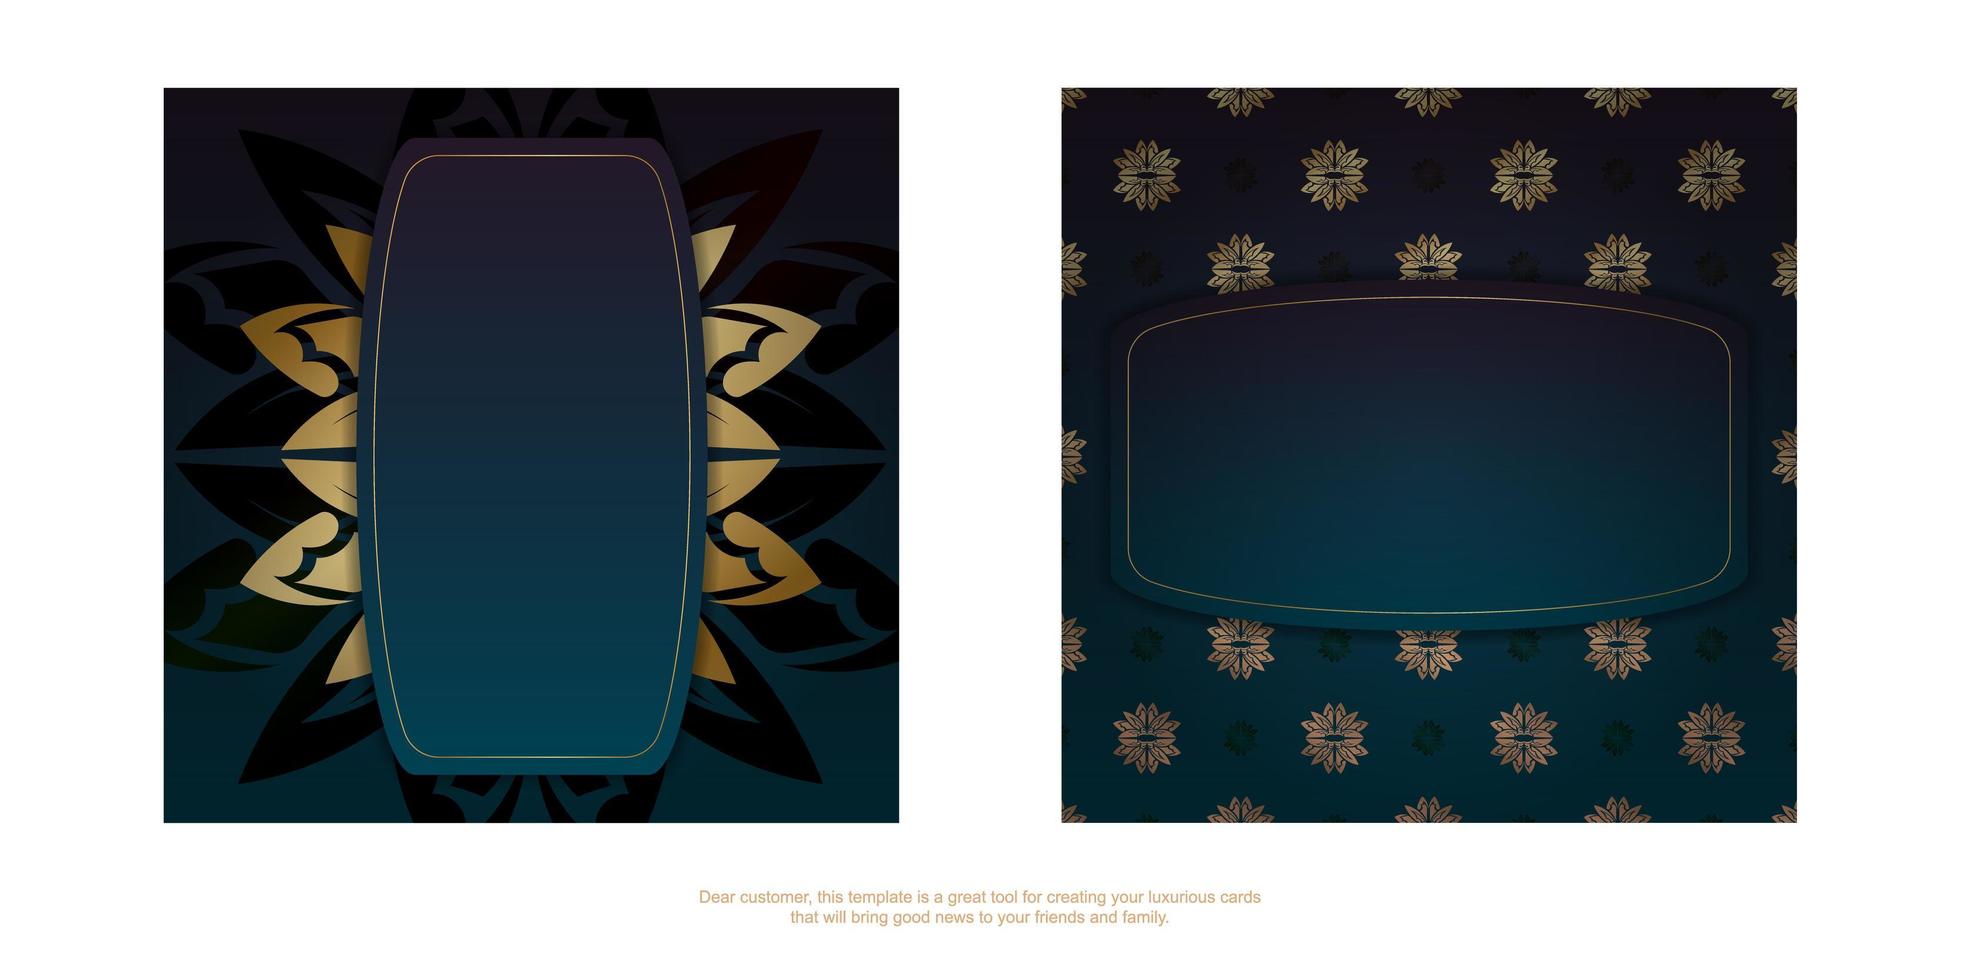 folleto de felicitación de plantilla con un degradado de color azul con adornos de oro griego para sus felicitaciones. vector